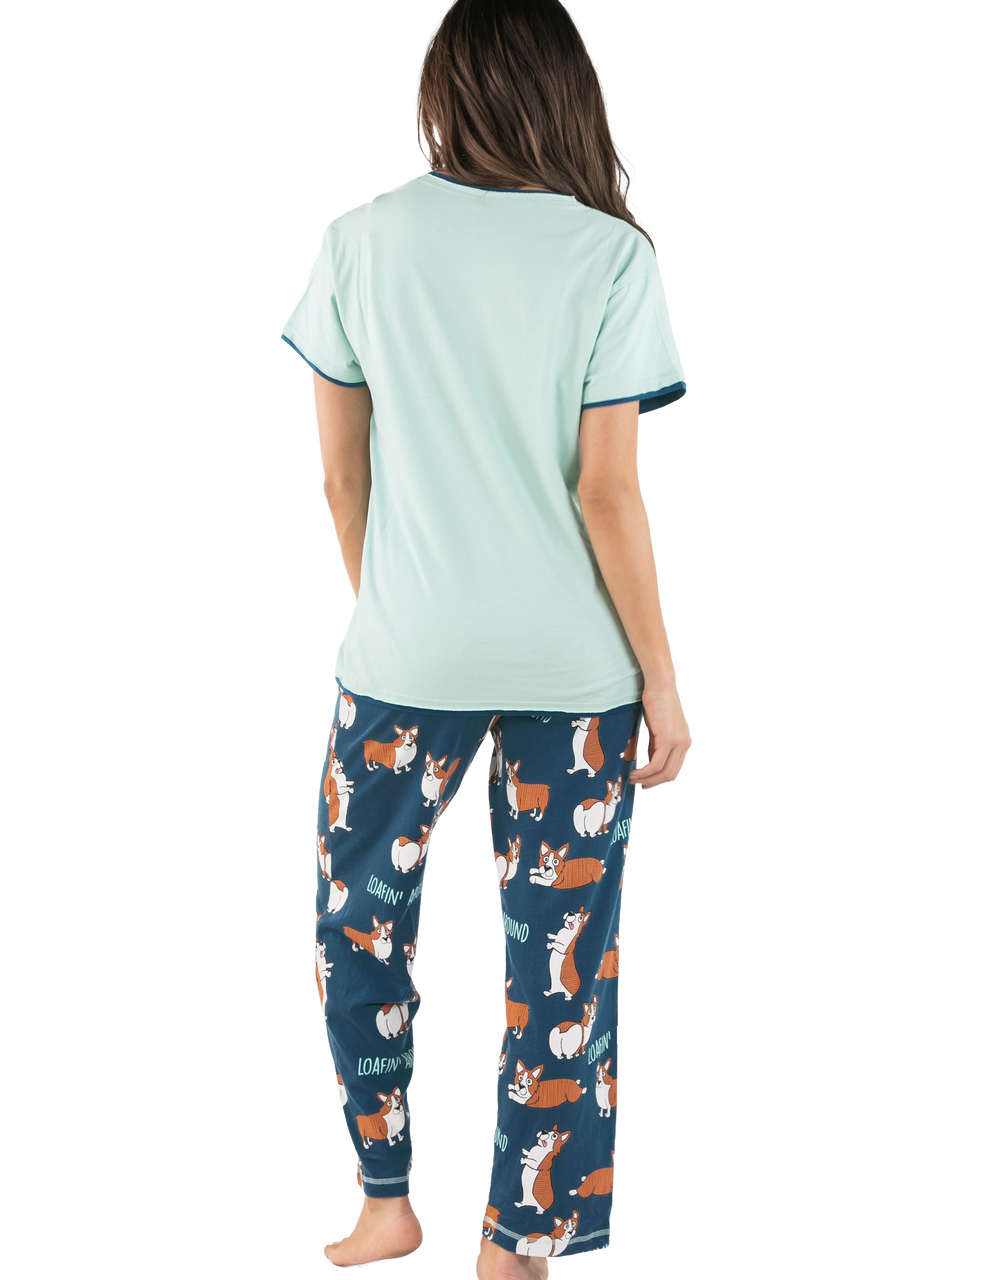 Womens Pajamas 2 Piece Pyjamas Loungewear Sleepwear Nightgown Corgi Dog,  Multi1, X-Small : : Clothing, Shoes & Accessories